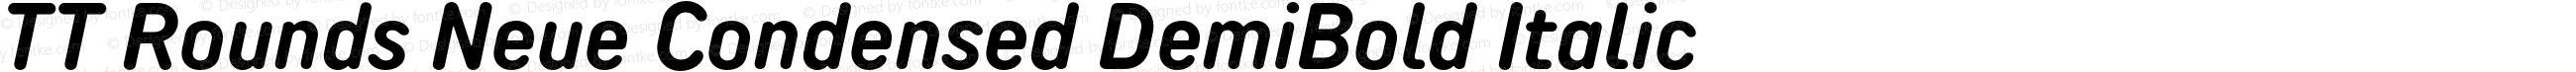 TT Rounds Neue Condensed DemiBold Italic